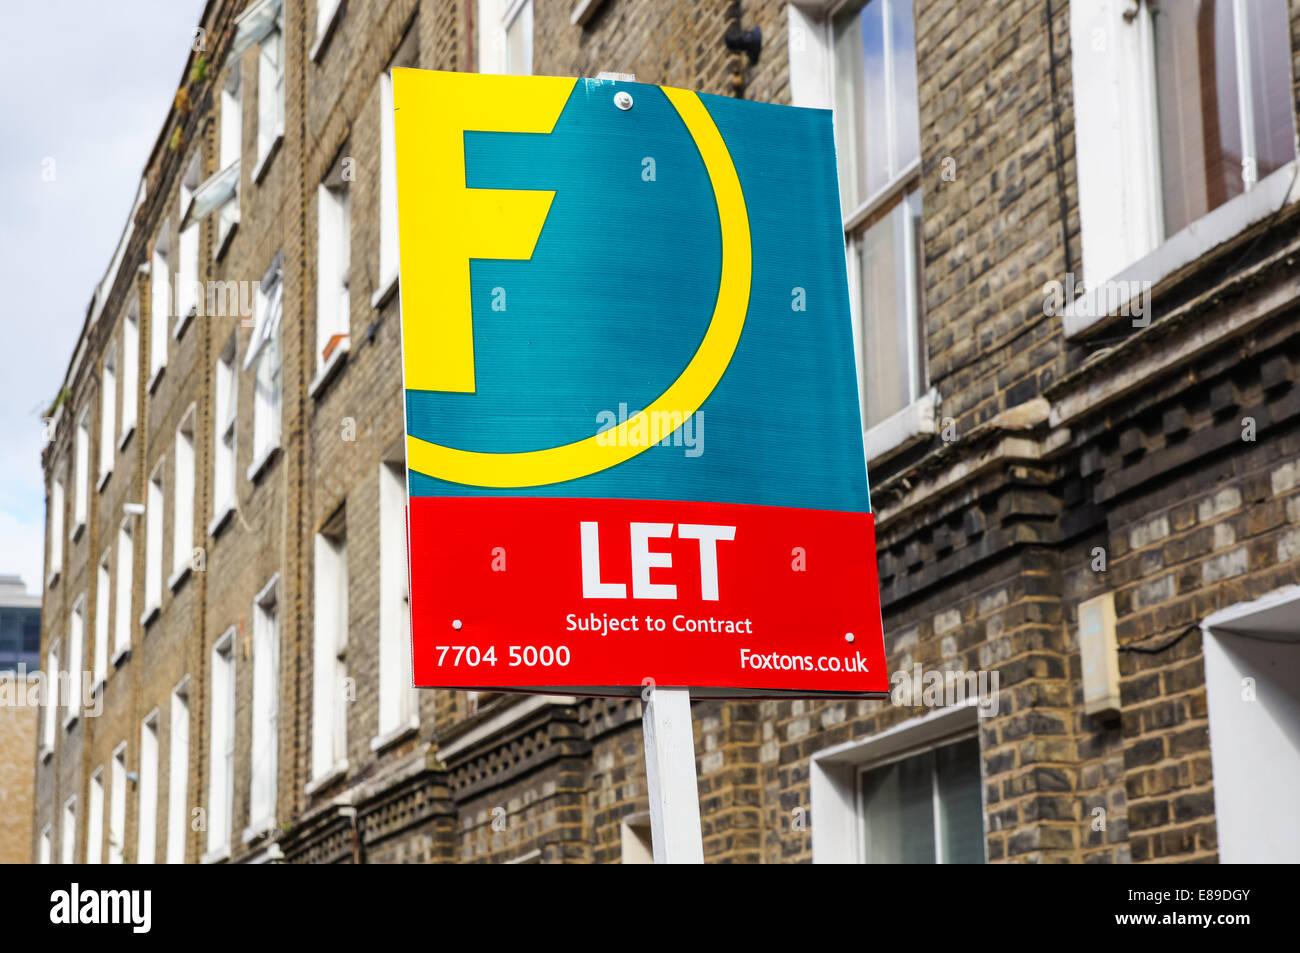 Foxtons signe de l'immobilier à laisser dehors maisons mitoyennes dedans Londres du Sud Angleterre Royaume-Uni Royaume-Uni Banque D'Images